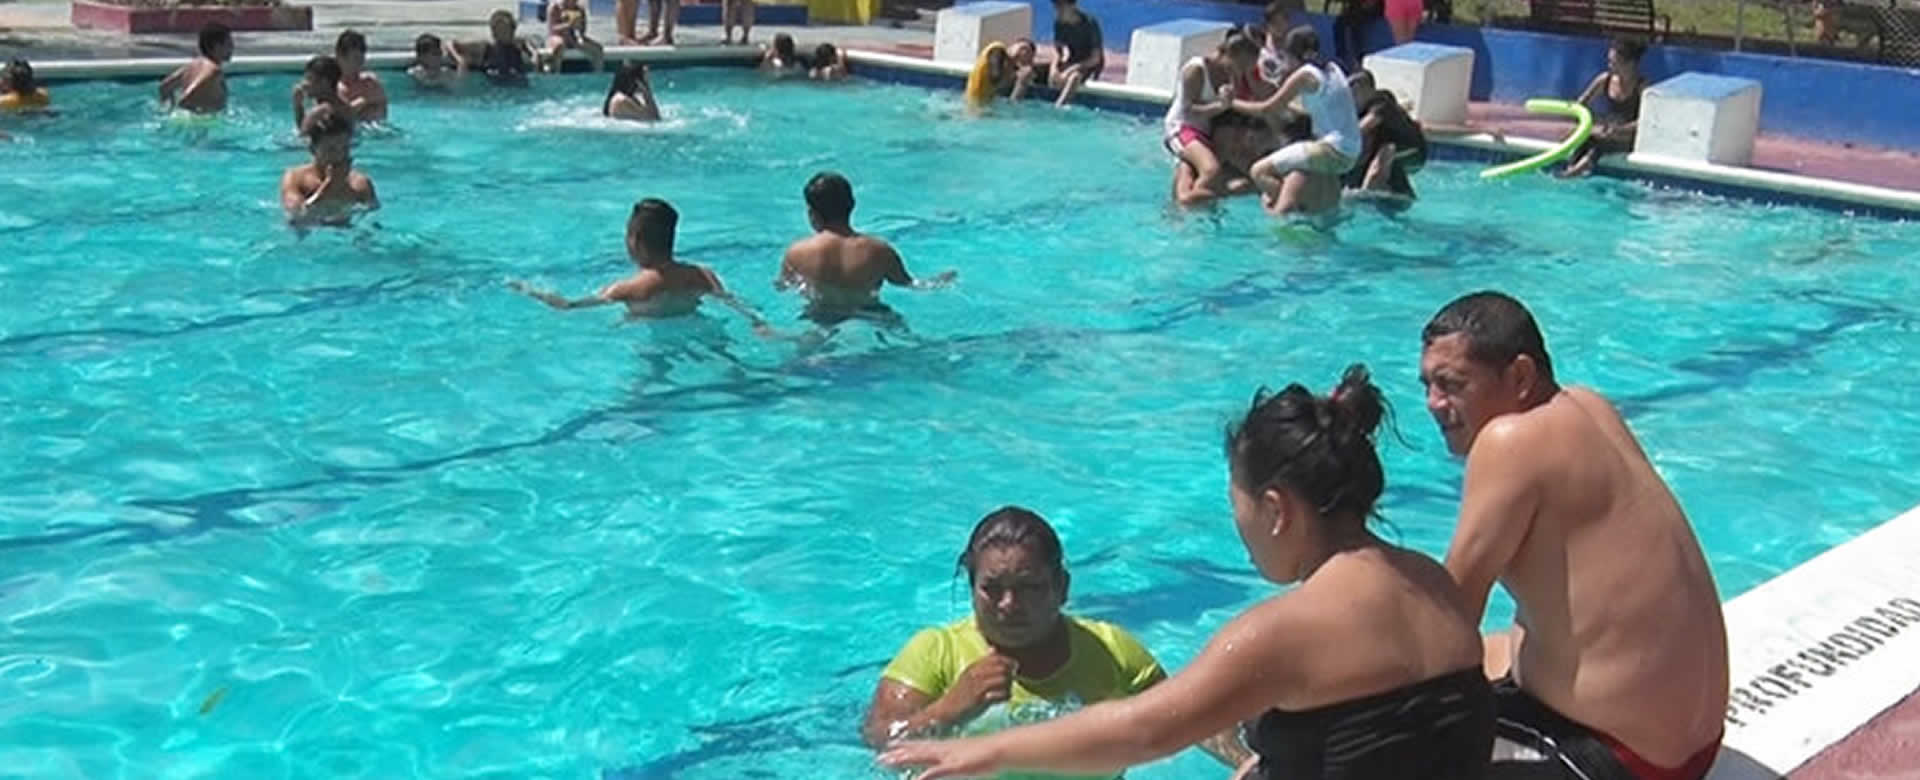 El verano llegó al centro recreativo Xilonem, y las familias disfrutan al máximo